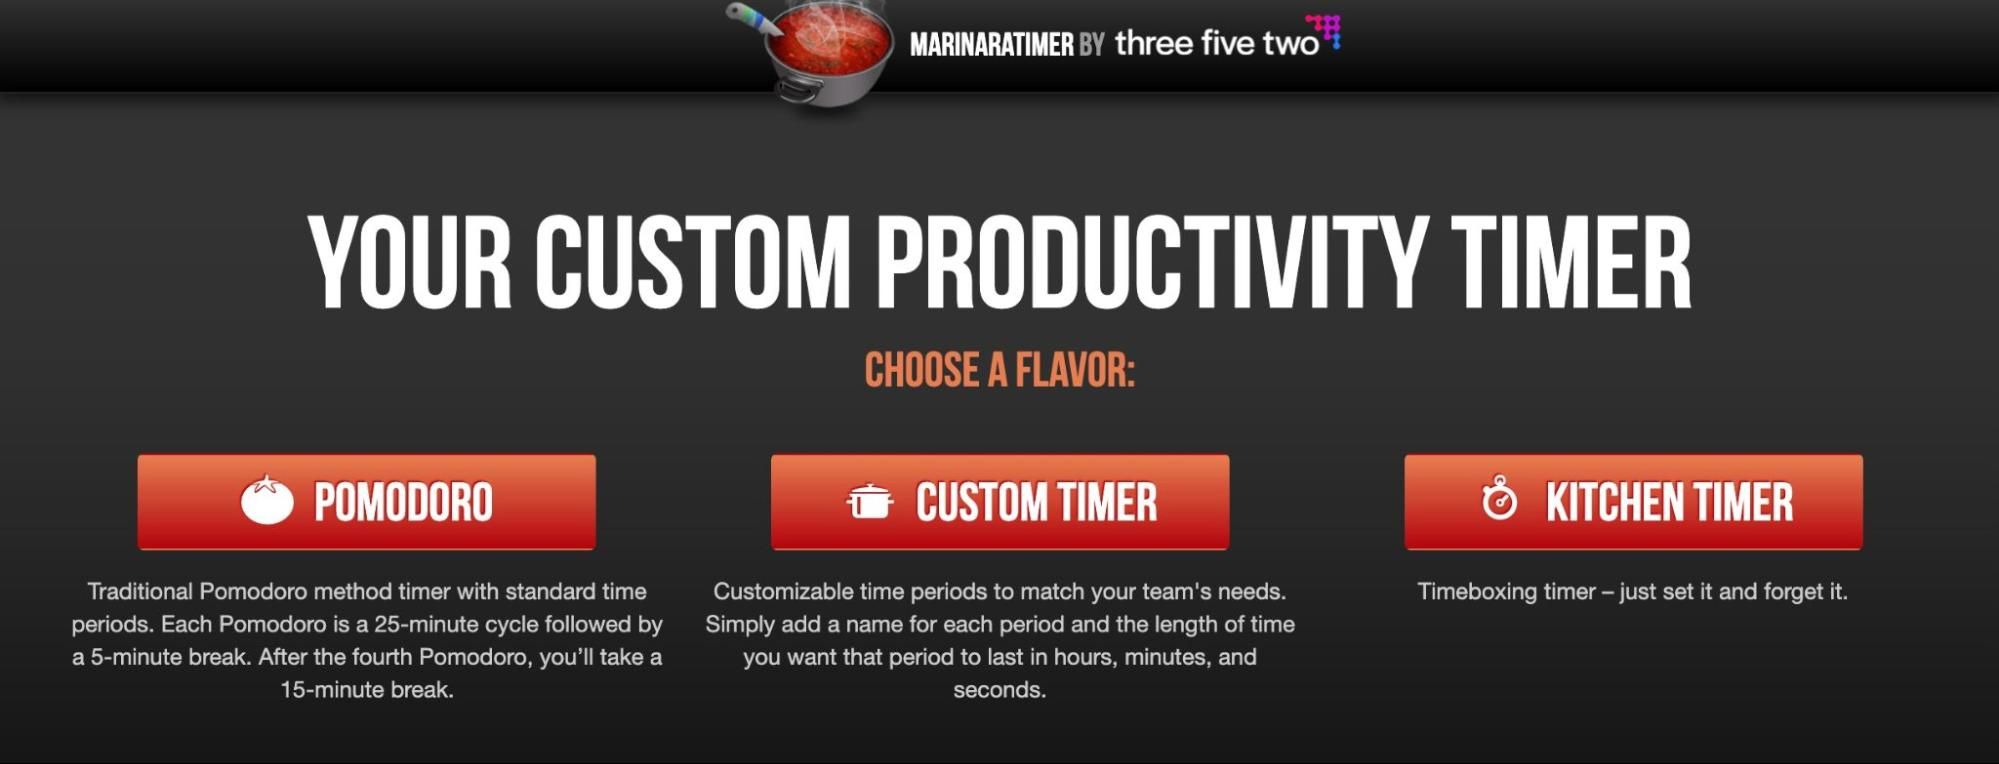 Marinara Custom Productivity Timer